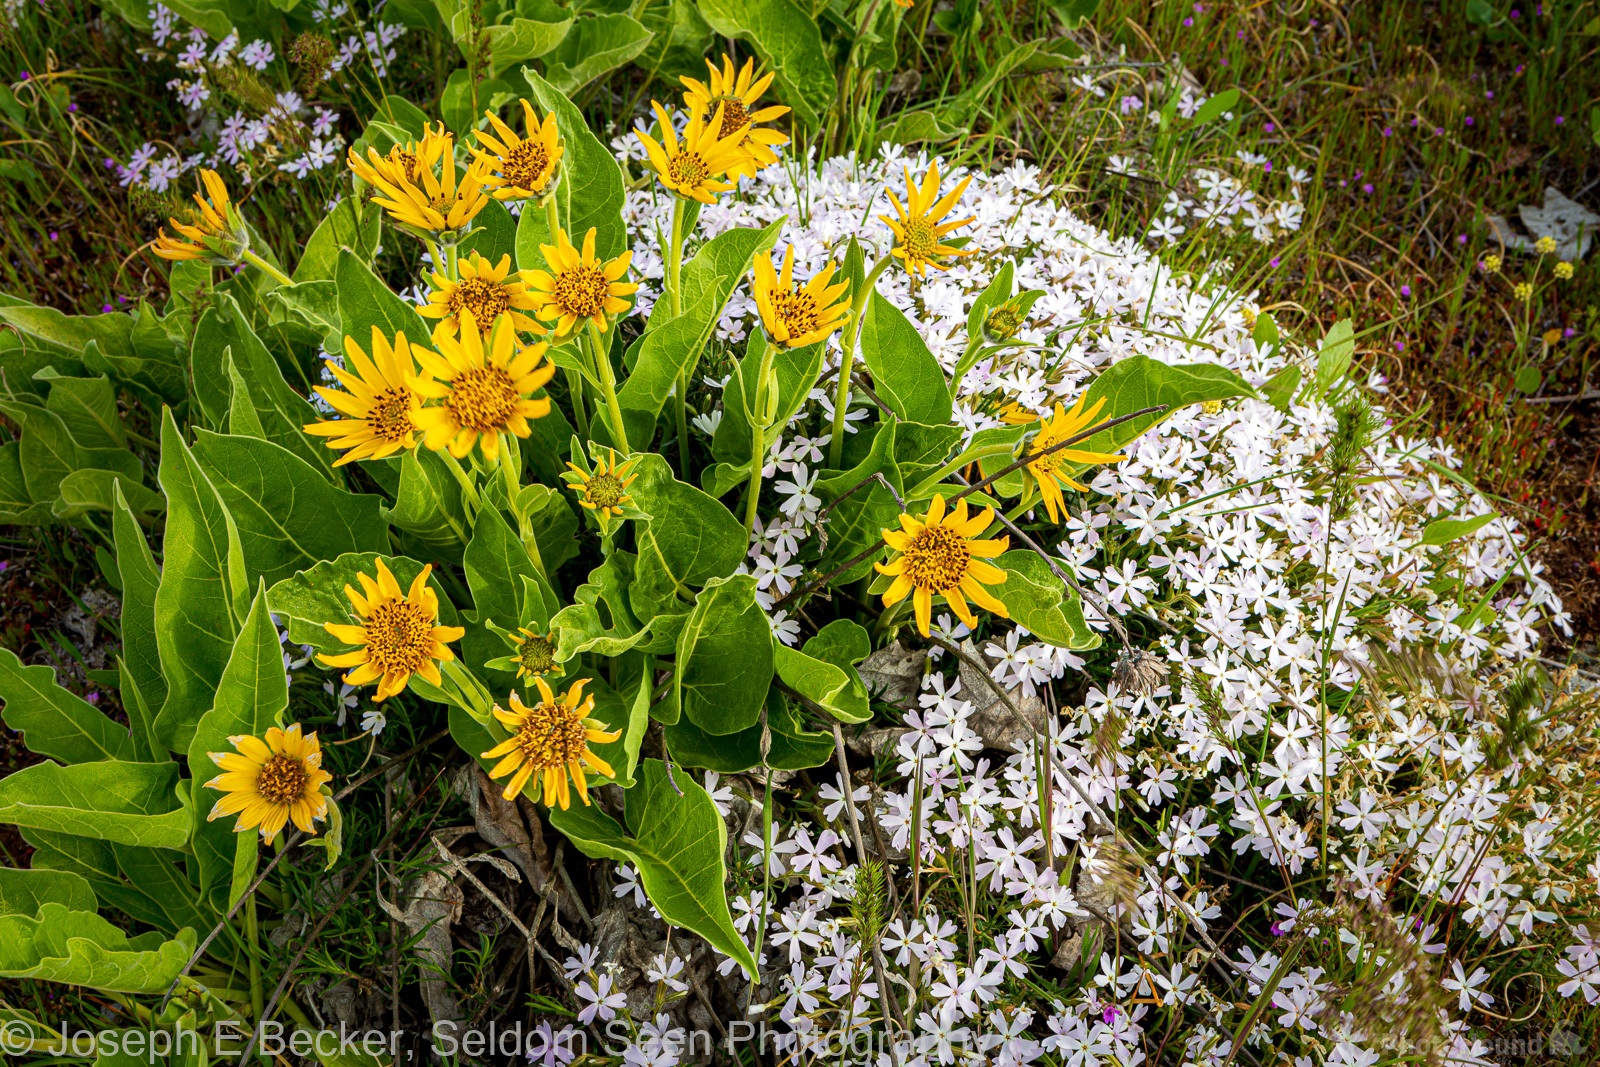 Image of Dalles Mountain Flower Fields by Joe Becker